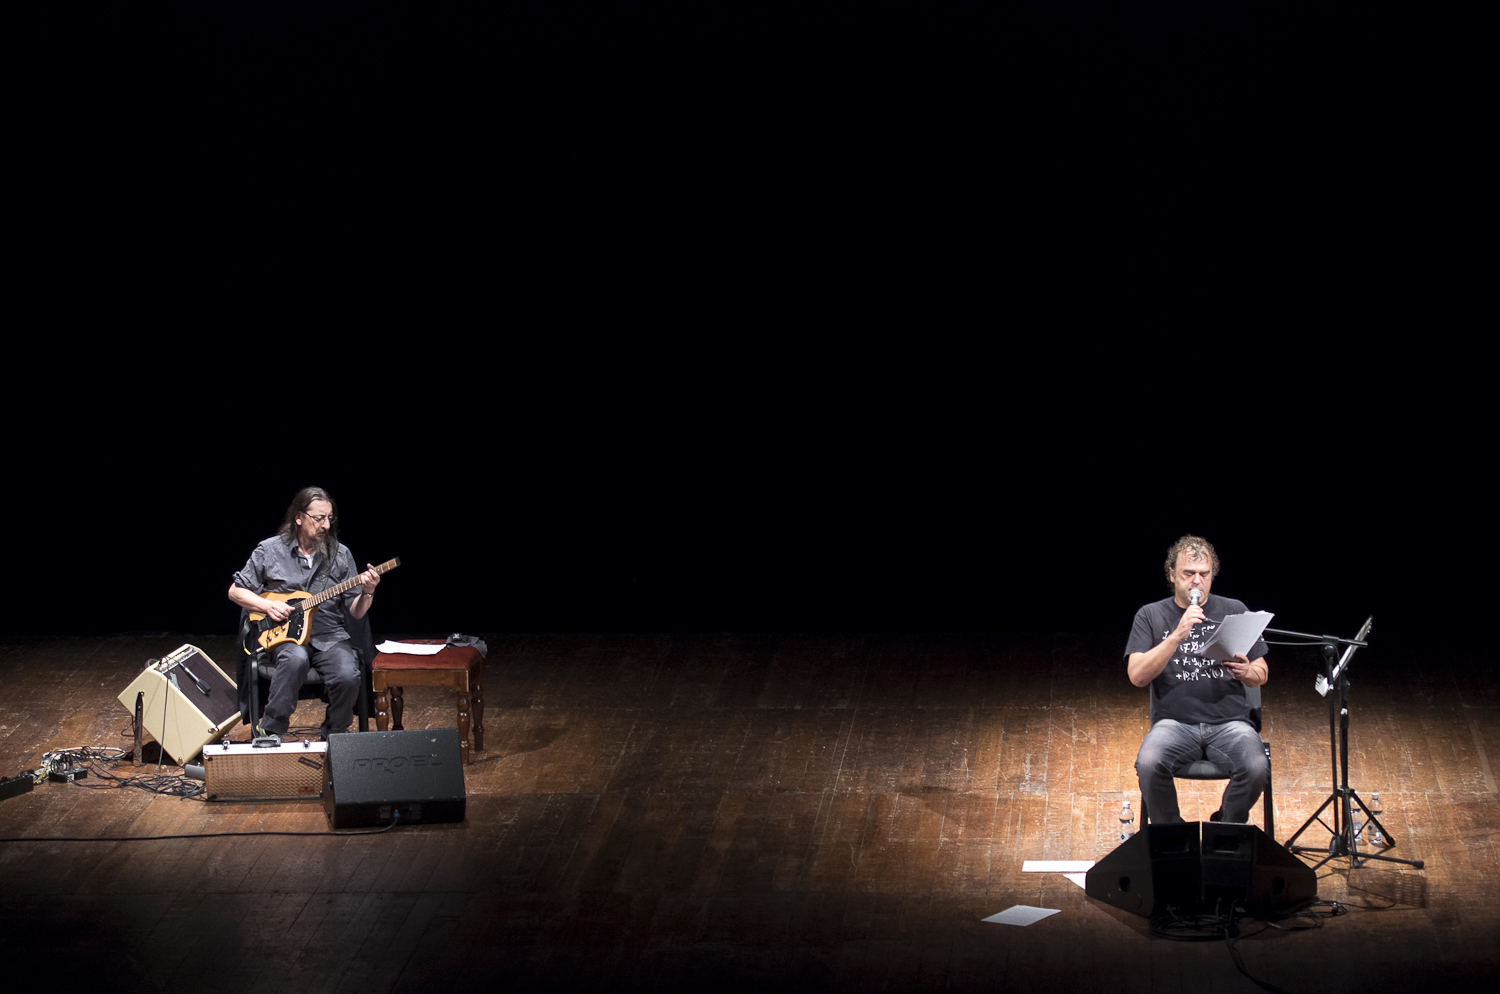 Foto di scena: La Notte, Pippo Delbono e Piero Corso alla chitarra, al Teatro Filodrammatici per lecite/visioni domenica 29 ottobre 2017